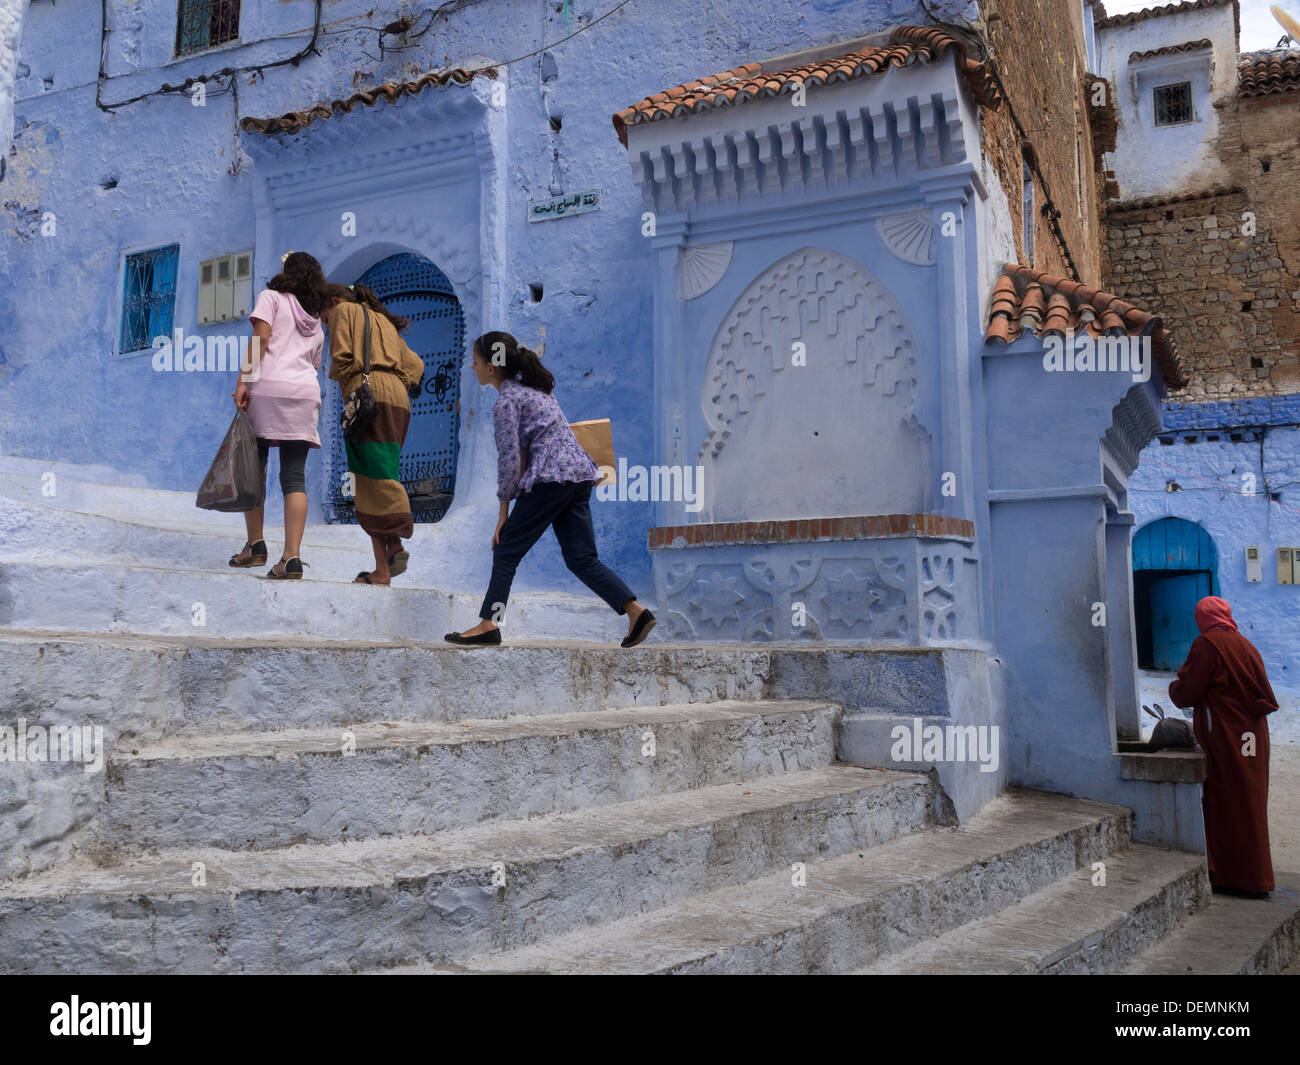 Trois enfants à pied vers le haut des escaliers à Chefchaouen, Maroc Banque D'Images